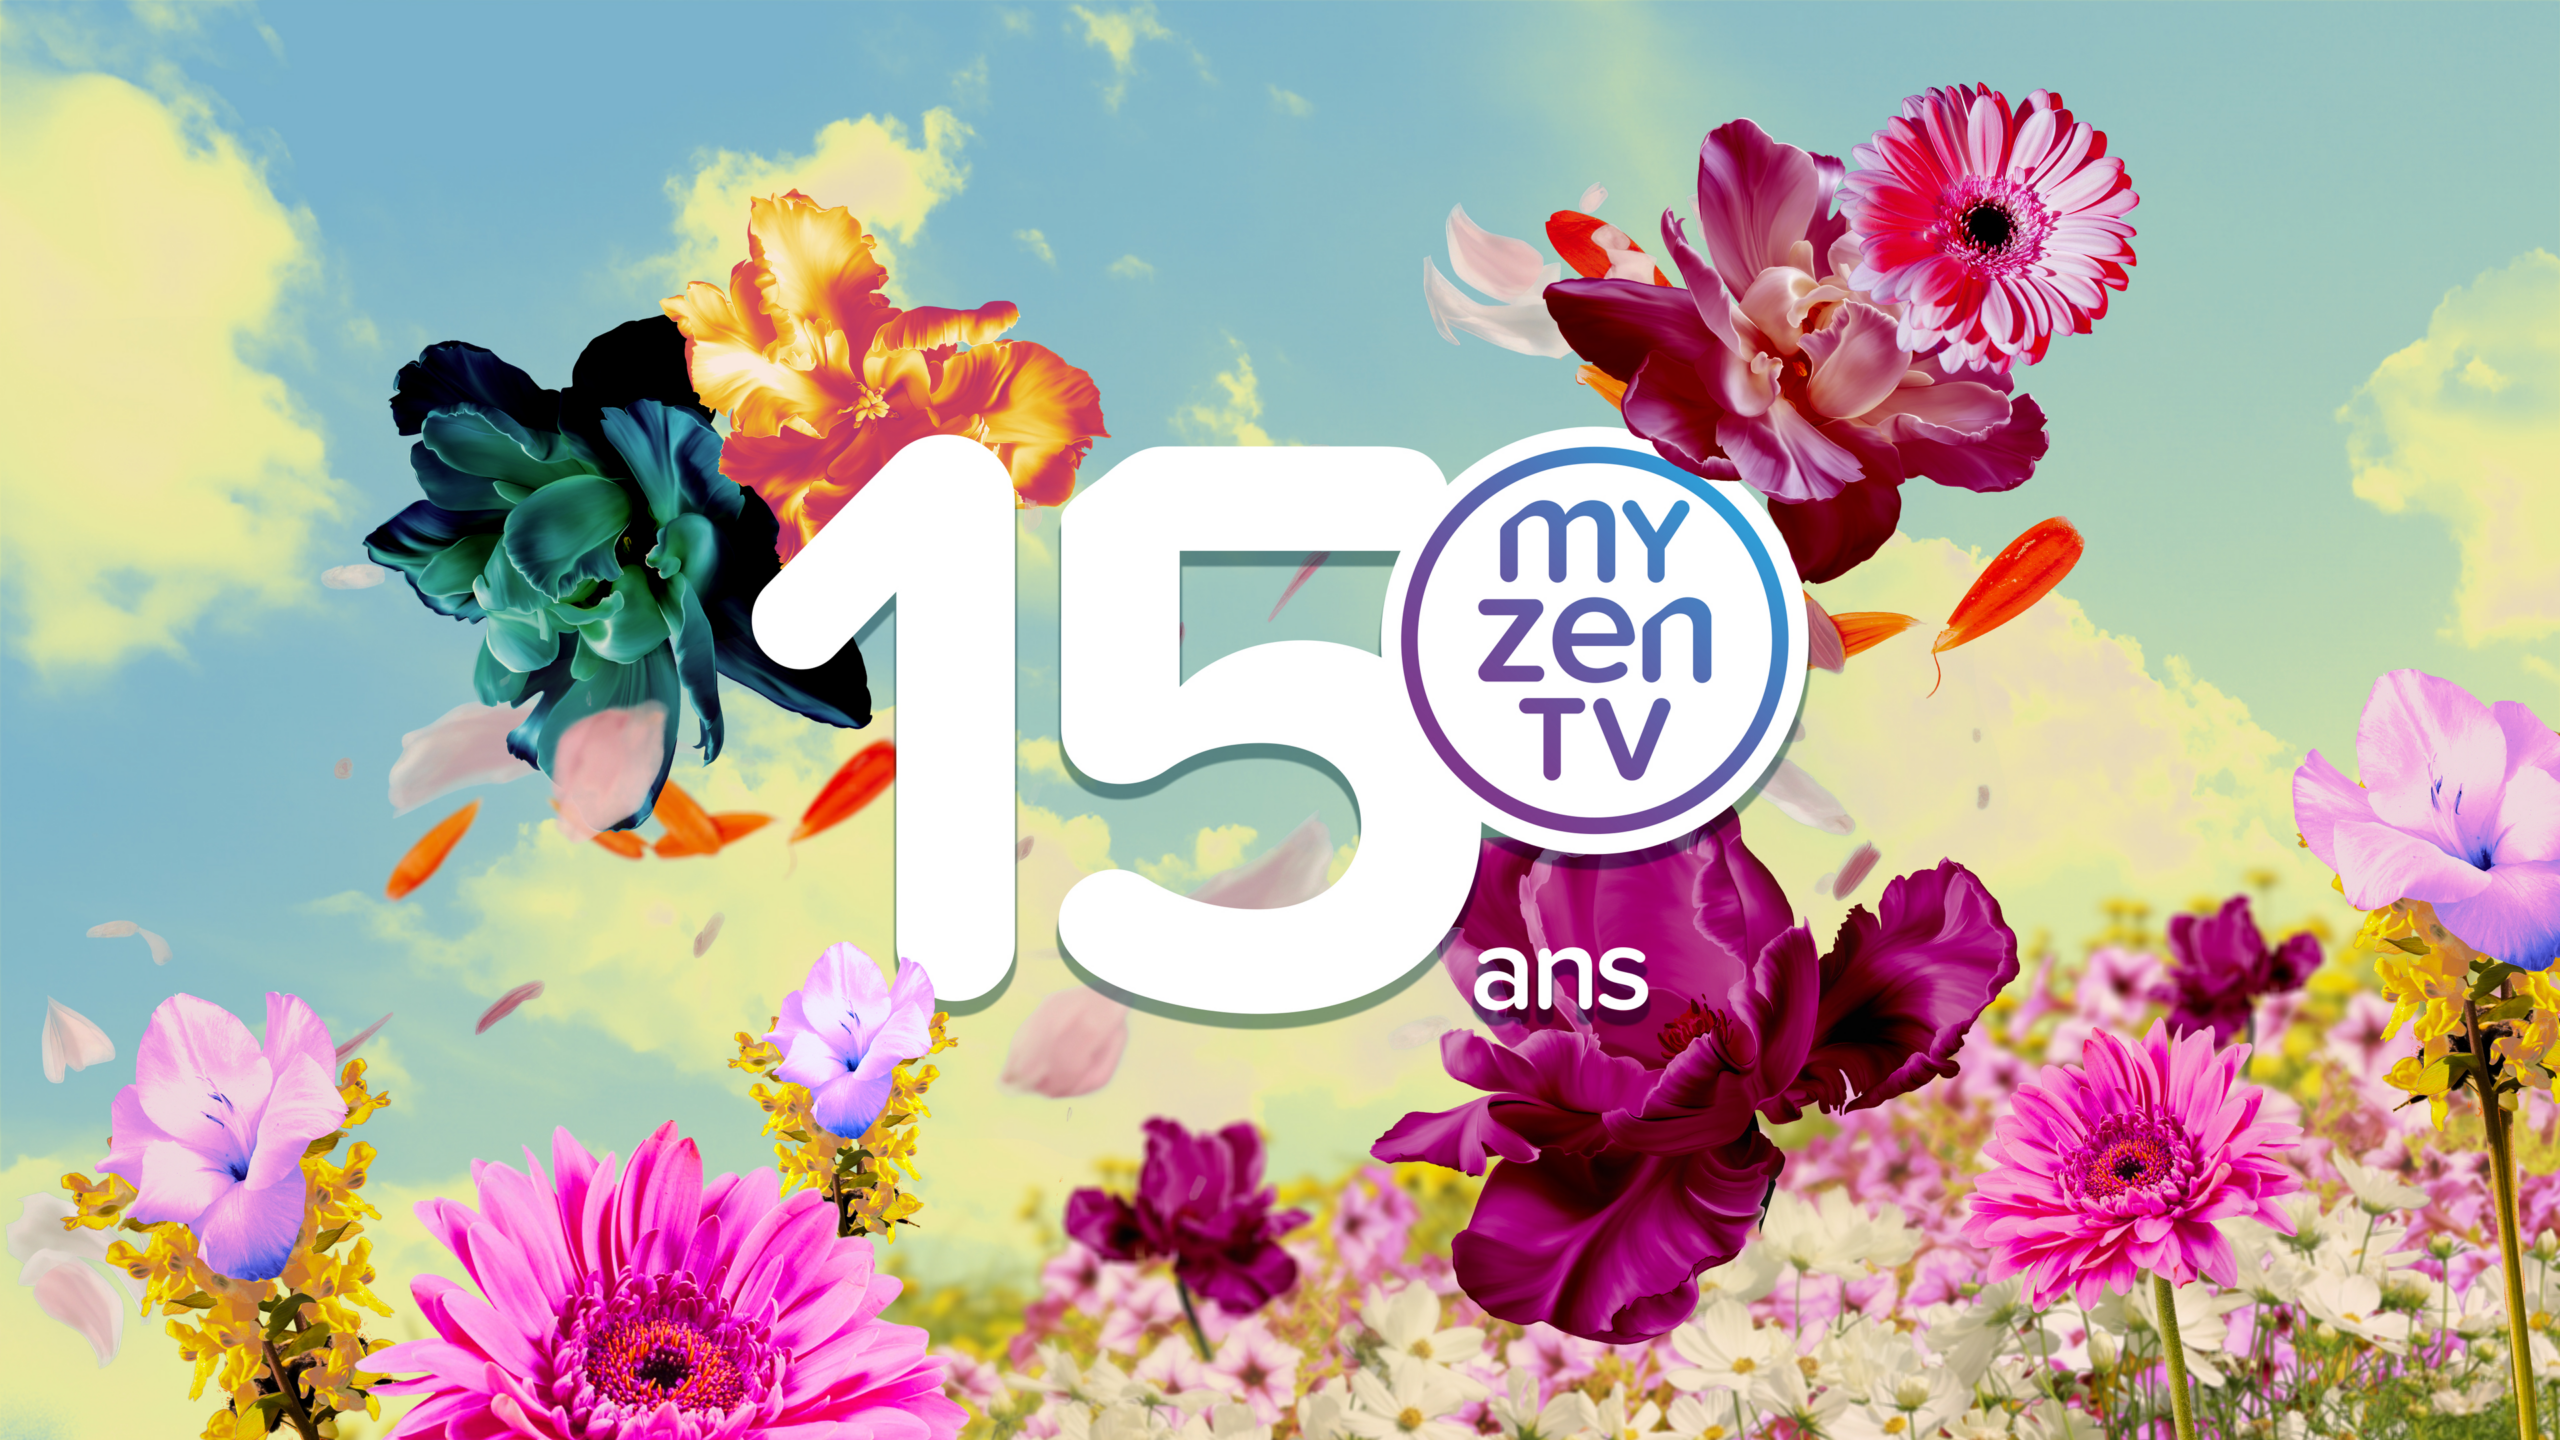 MyZen TV turns 15!